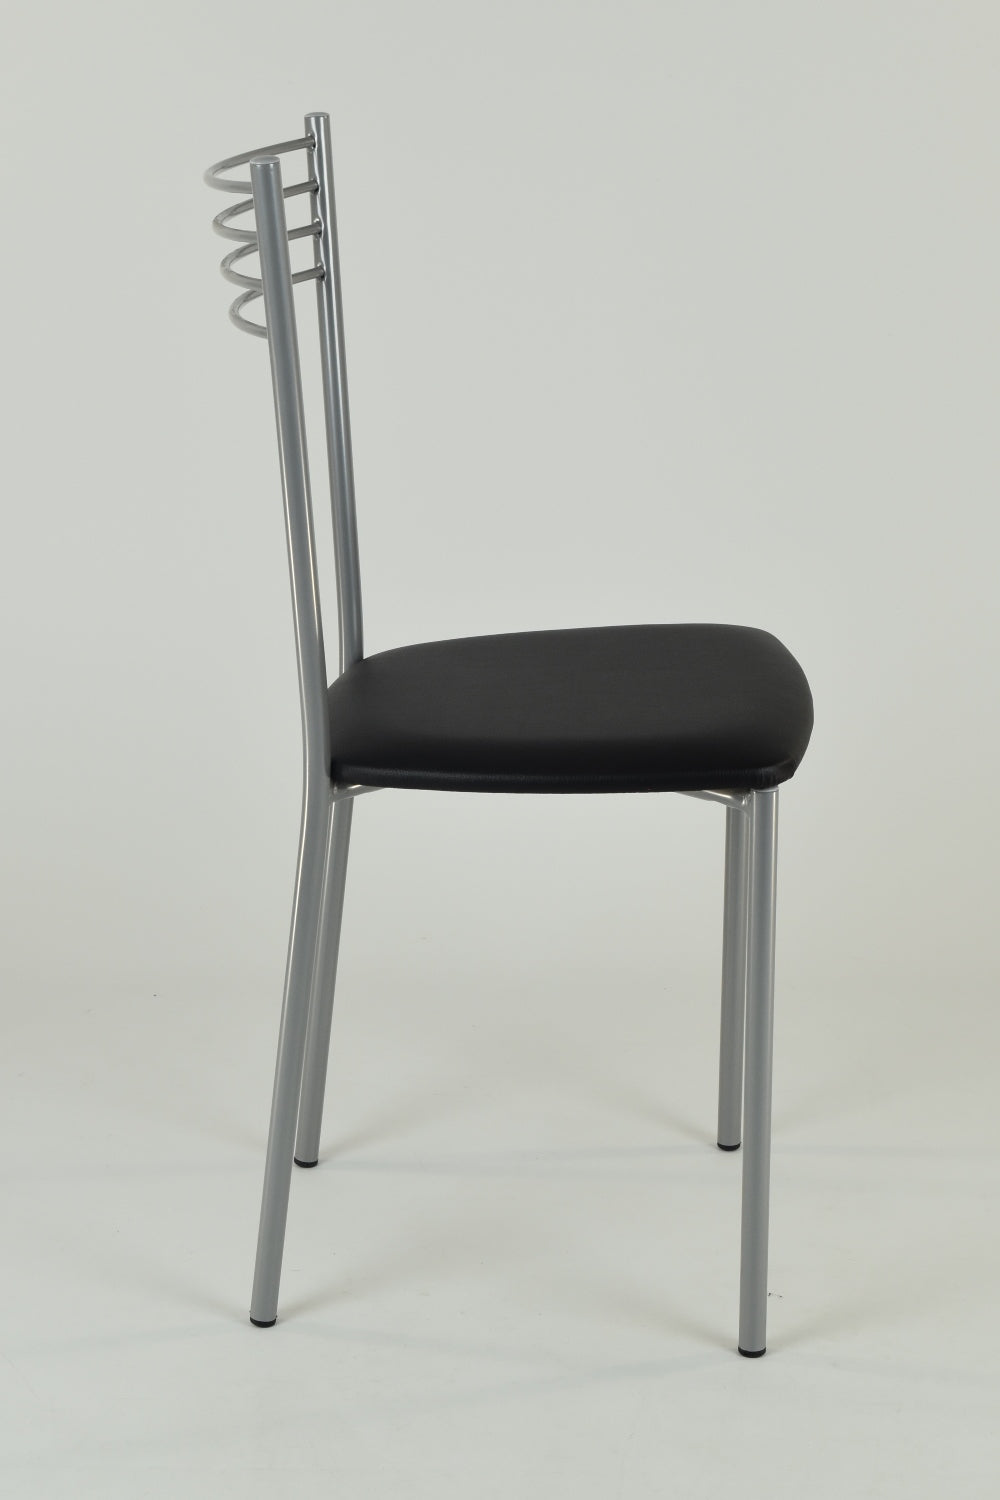 Tommychairs - Set 4 sillas de Cocina y Restaurante Elena, Estructura en Acero Pintado Aluminio, Asiento en Polipiel Color Negro